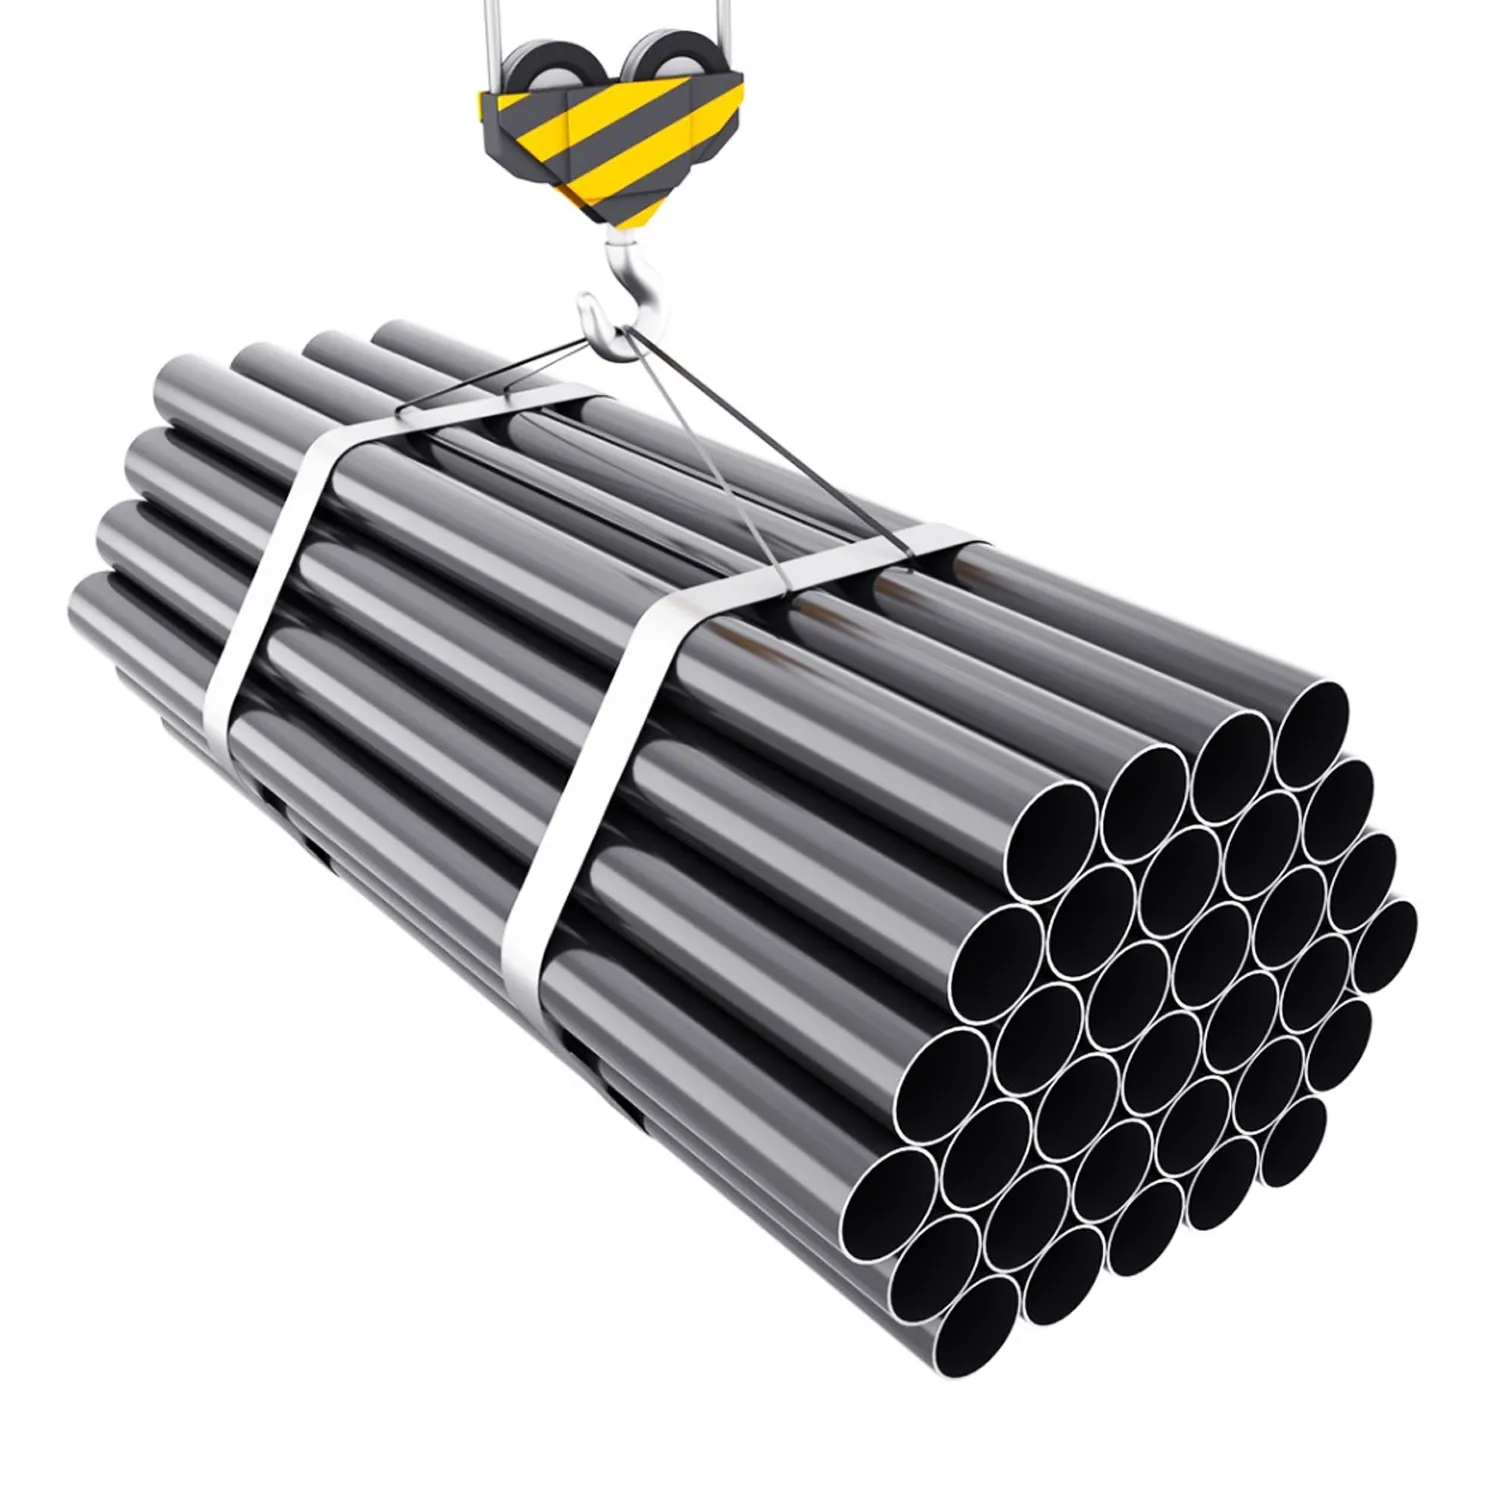 6 inch steel pipe ASME SA2205 Industrial duplex pipe engineering material steel